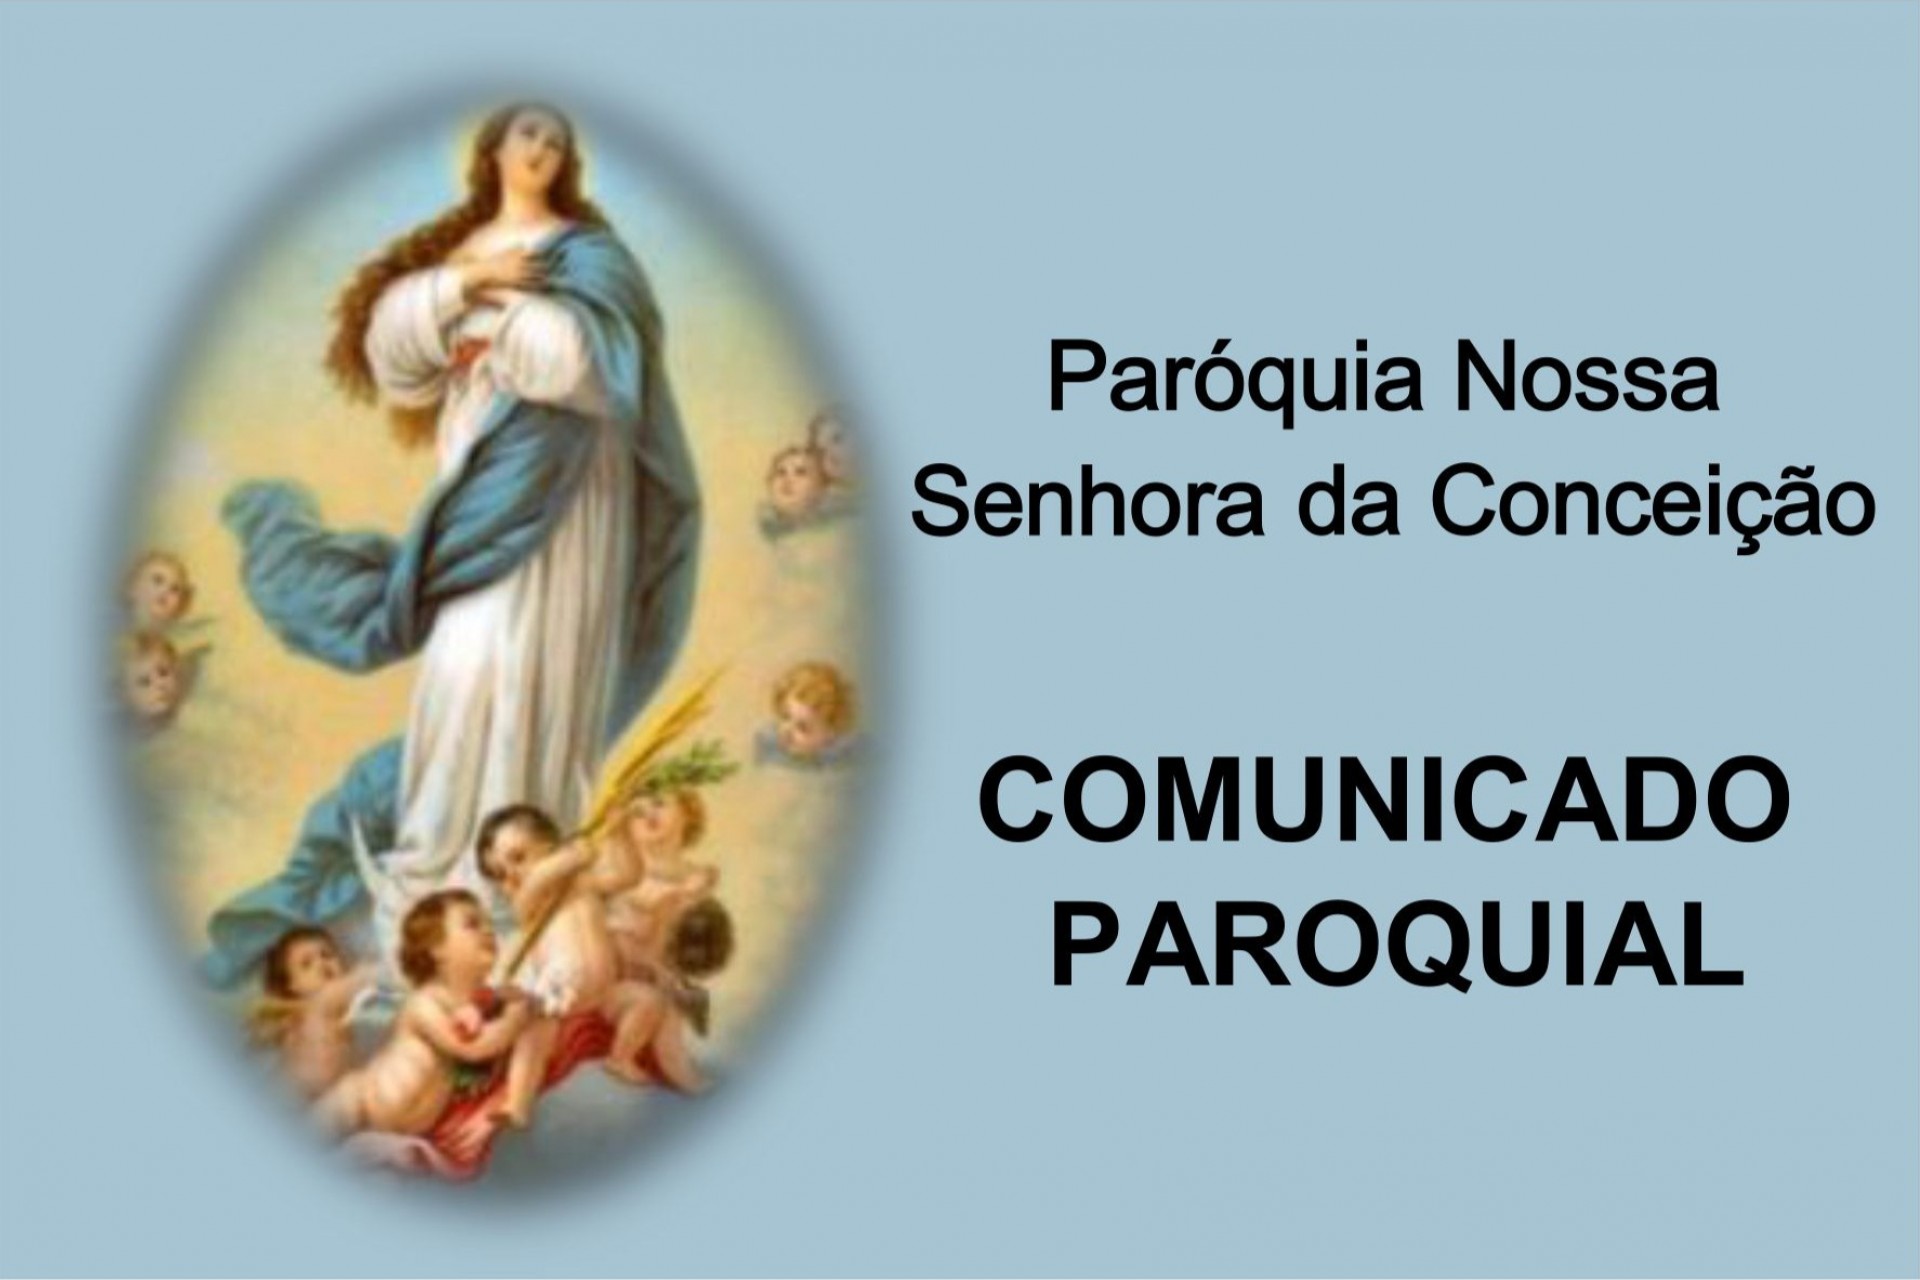 Paróquia Nossa Senhora da Conceição divulga comunicado com medidas e orientações sobre o Coronavírus